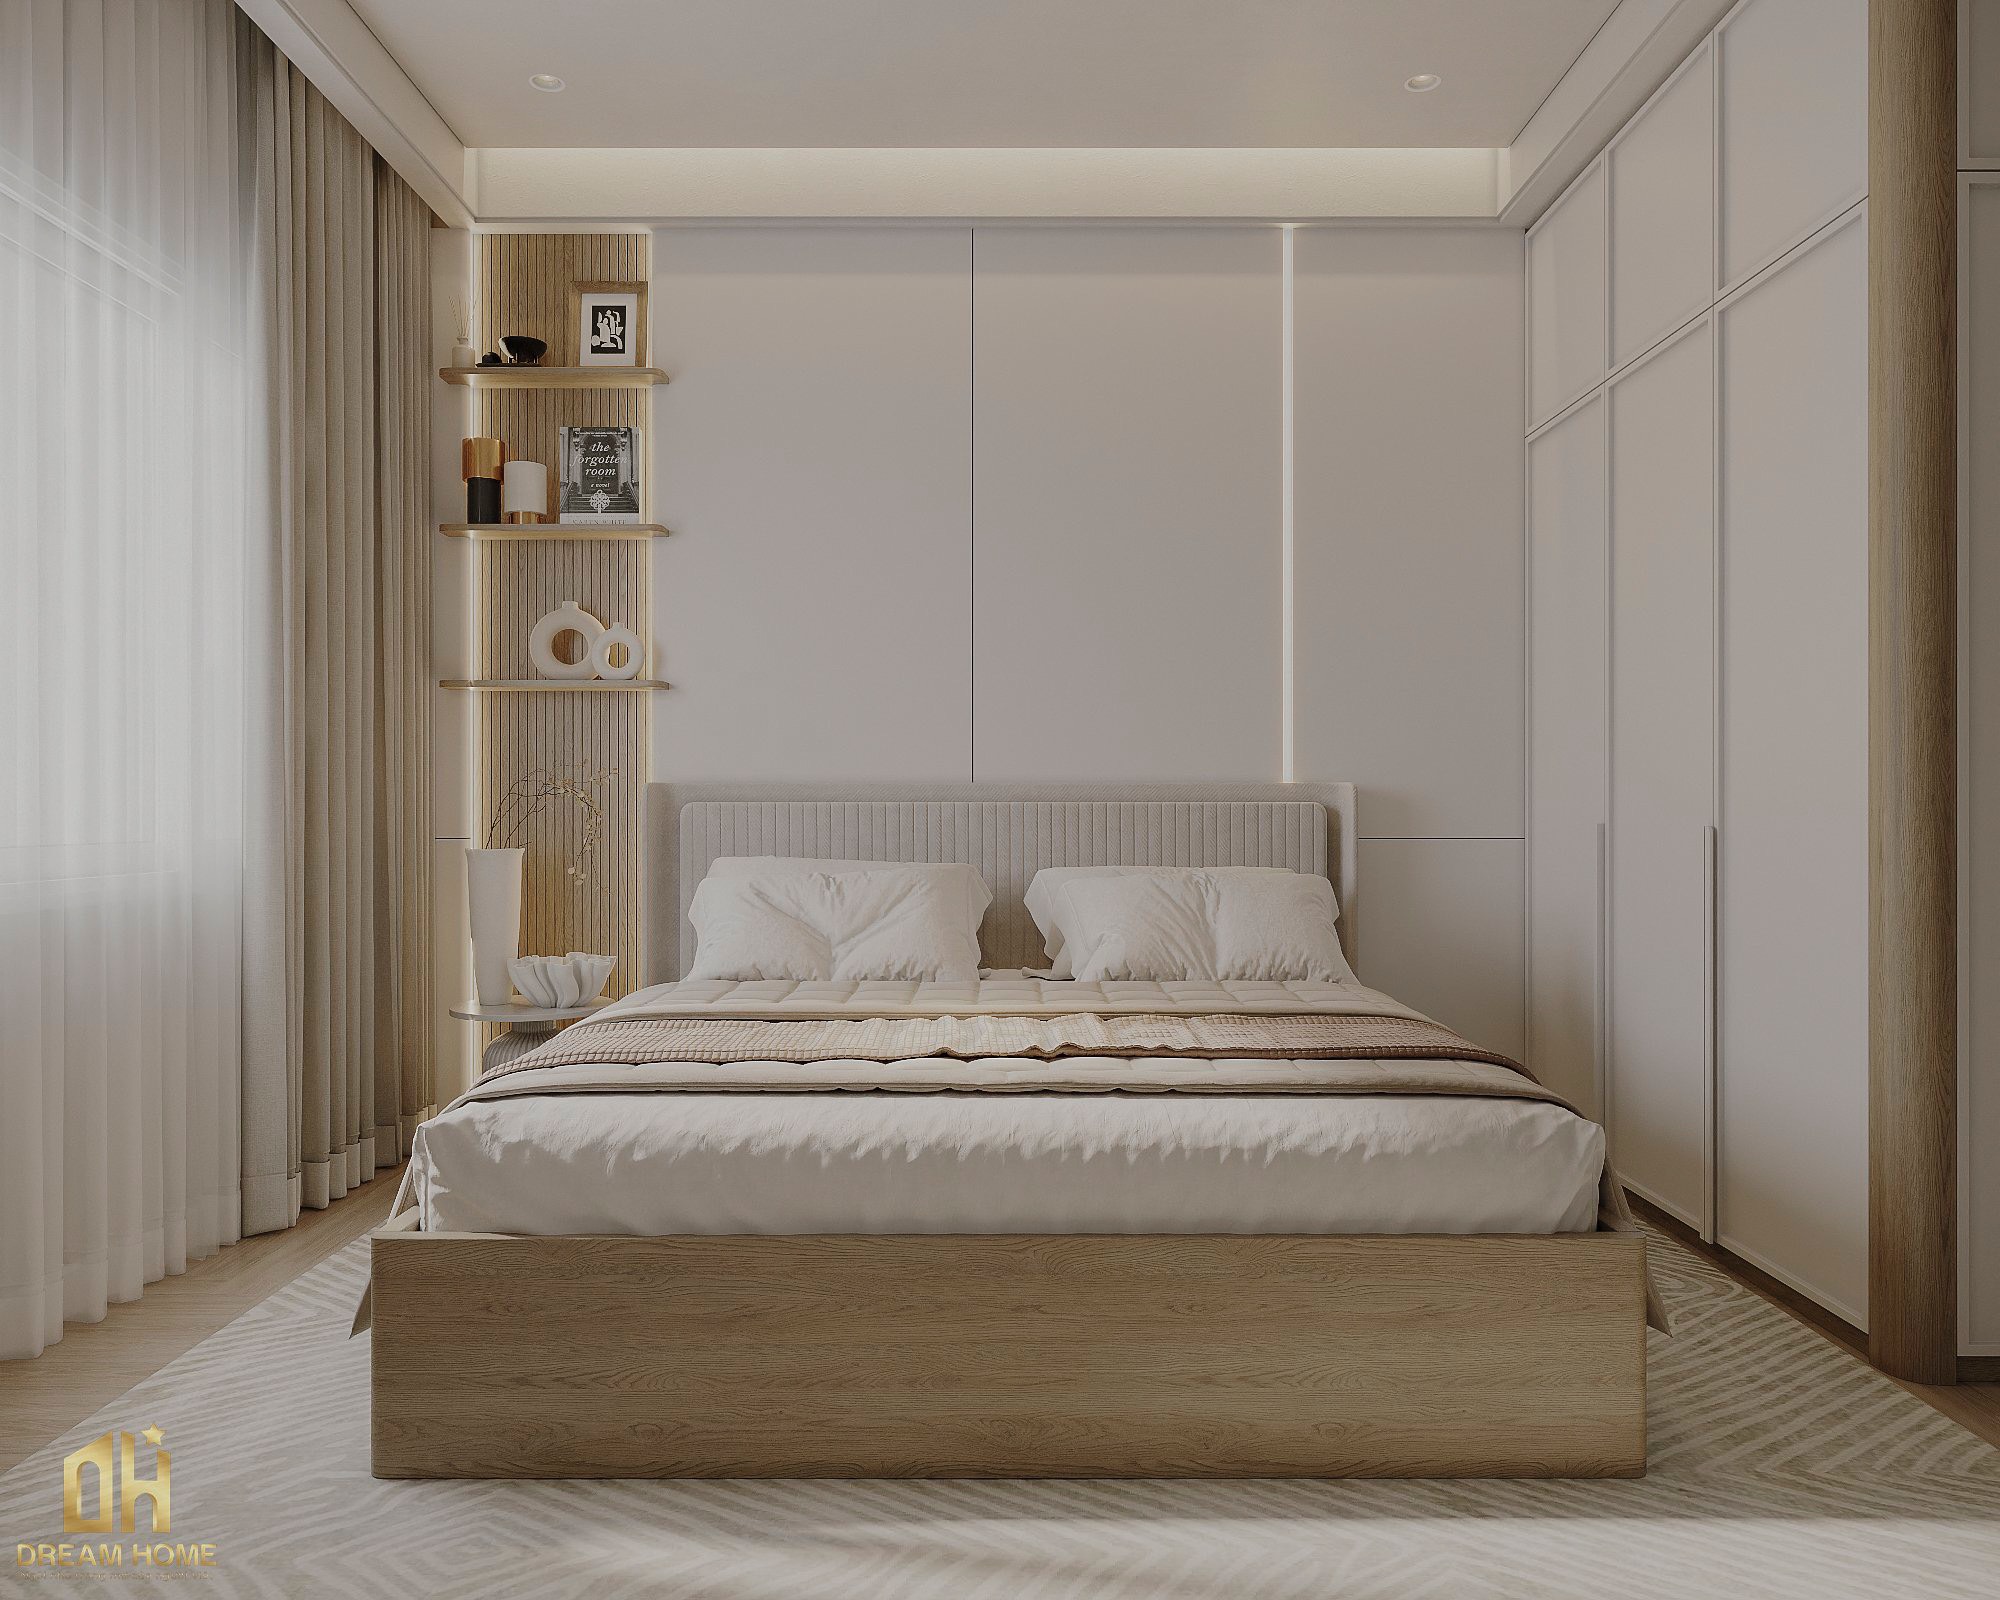 Với khung giường màu vân gỗ, kết hợp cùng ga trải giường mềm mại và những chiếc gối tựa trang nhã.